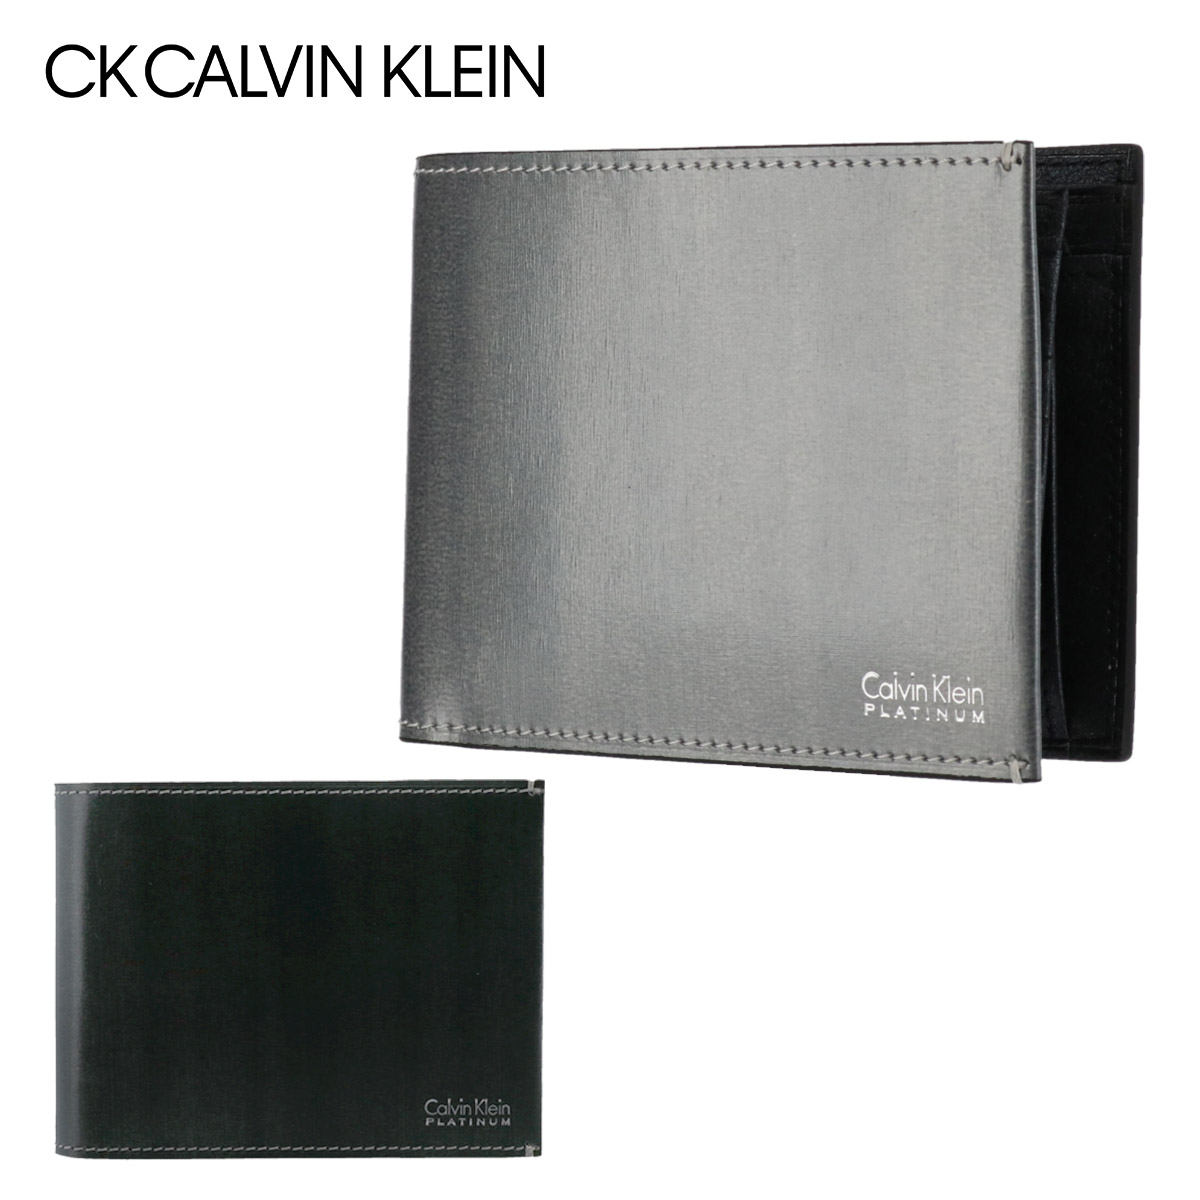 楽天市場 シーケー カルバンクライン 財布 二つ折り メンズ ボルダー 9614 Ck Calvin Klein 本革 レザー Po5 Bef サックスバー